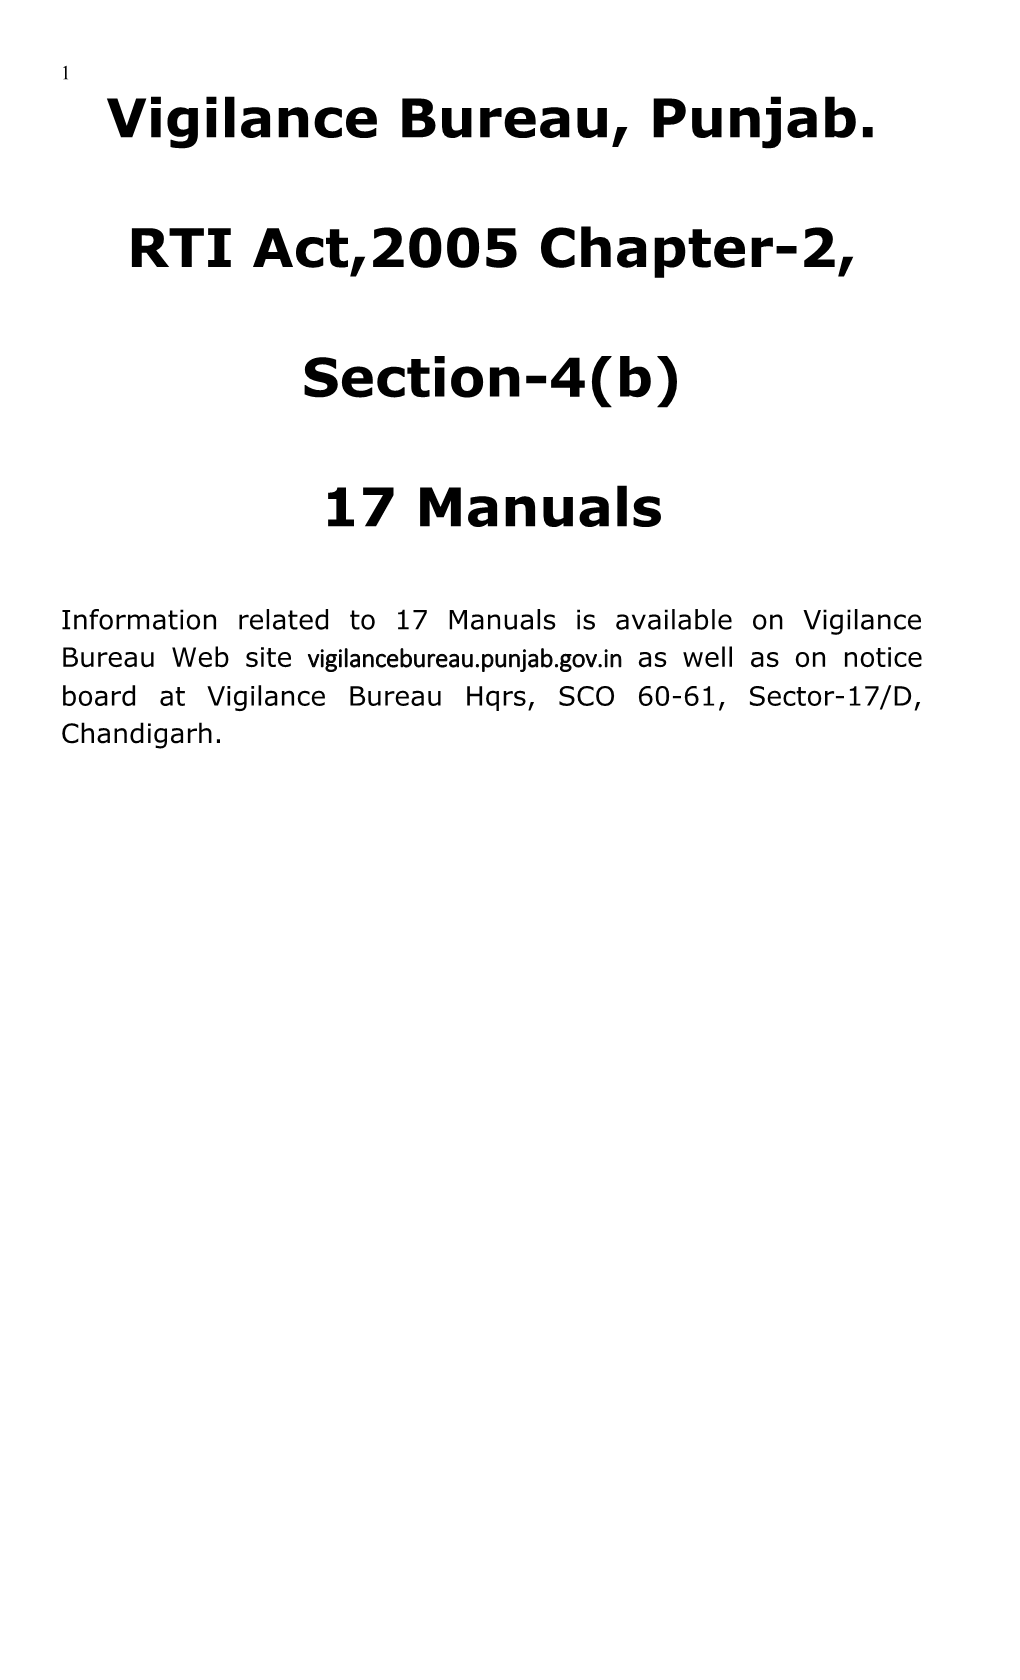 Information Handbook Under RTI Act, 2005 Last Updated: - 12/08/2015